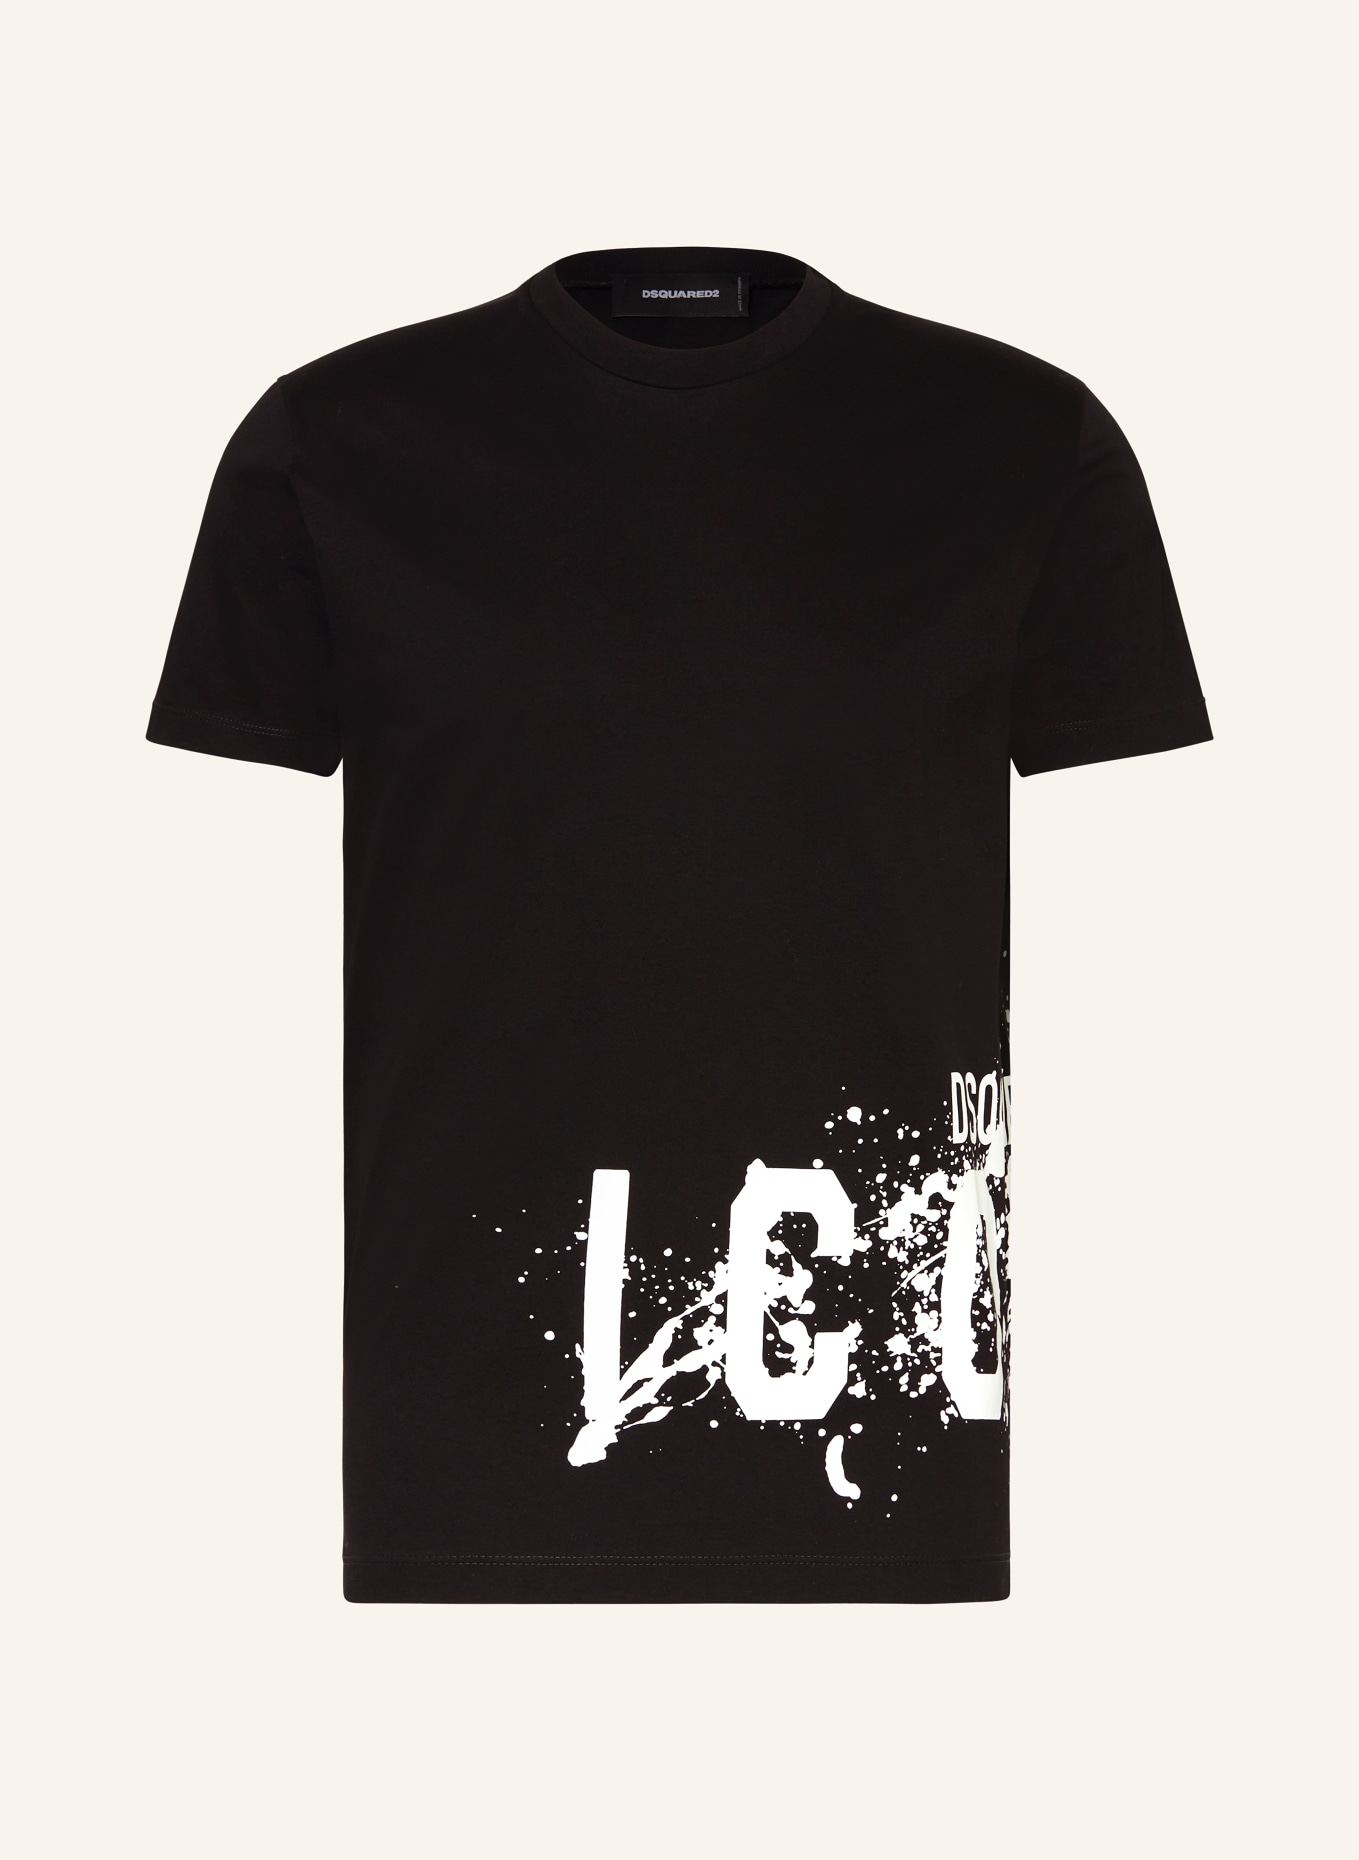 DSQUARED2 T-Shirt ICON, Farbe: SCHWARZ/ WEISS (Bild 1)